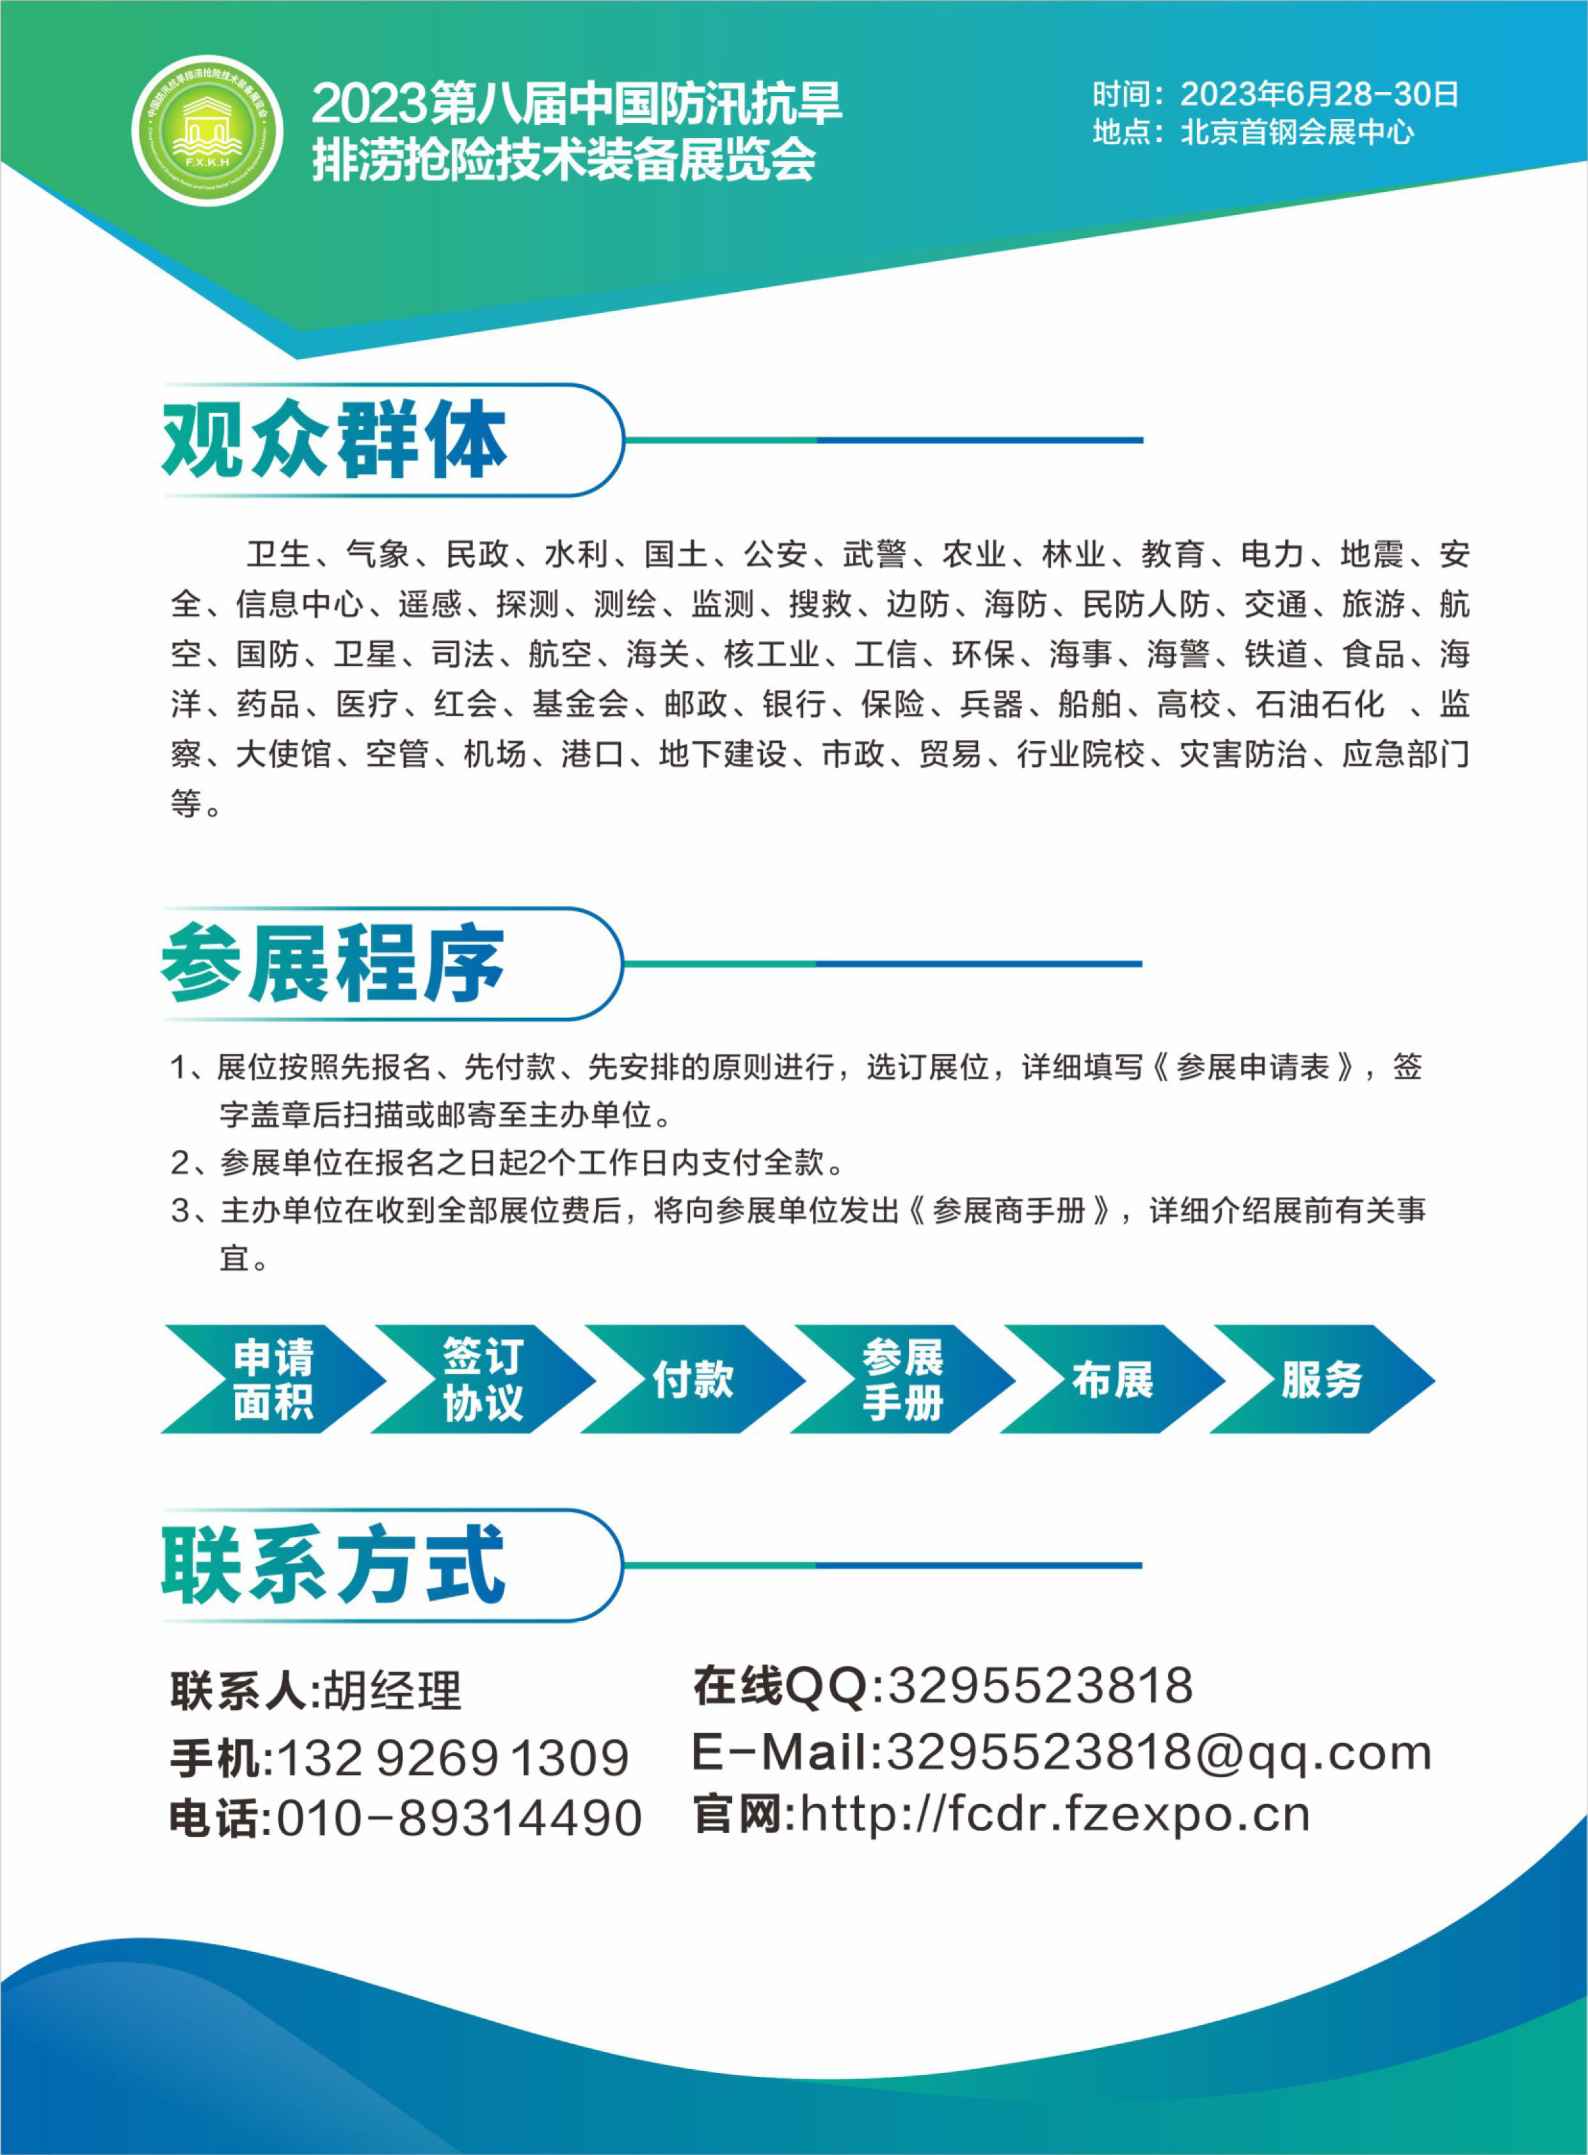 2023第八届中国防汛抗旱排涝抢险技术装备展览会将在6月北京召开